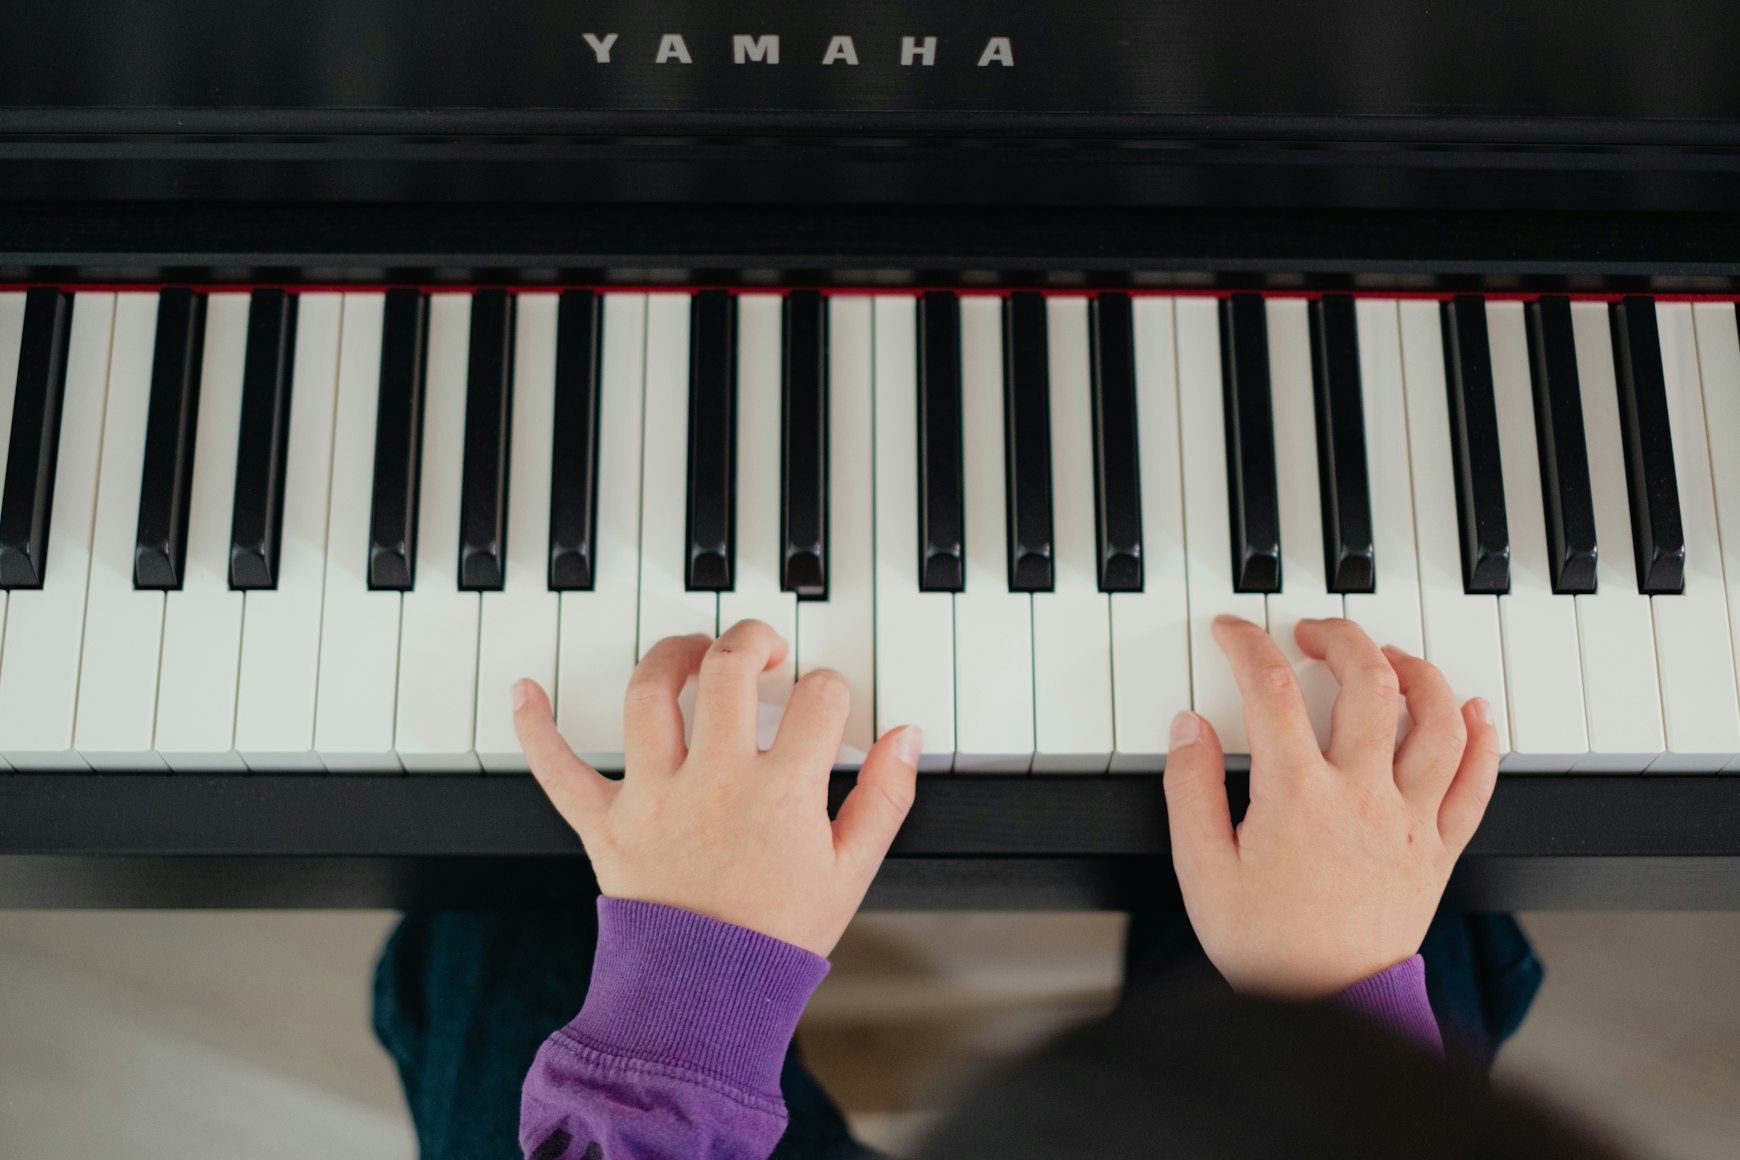 Yamaha Piano with keys